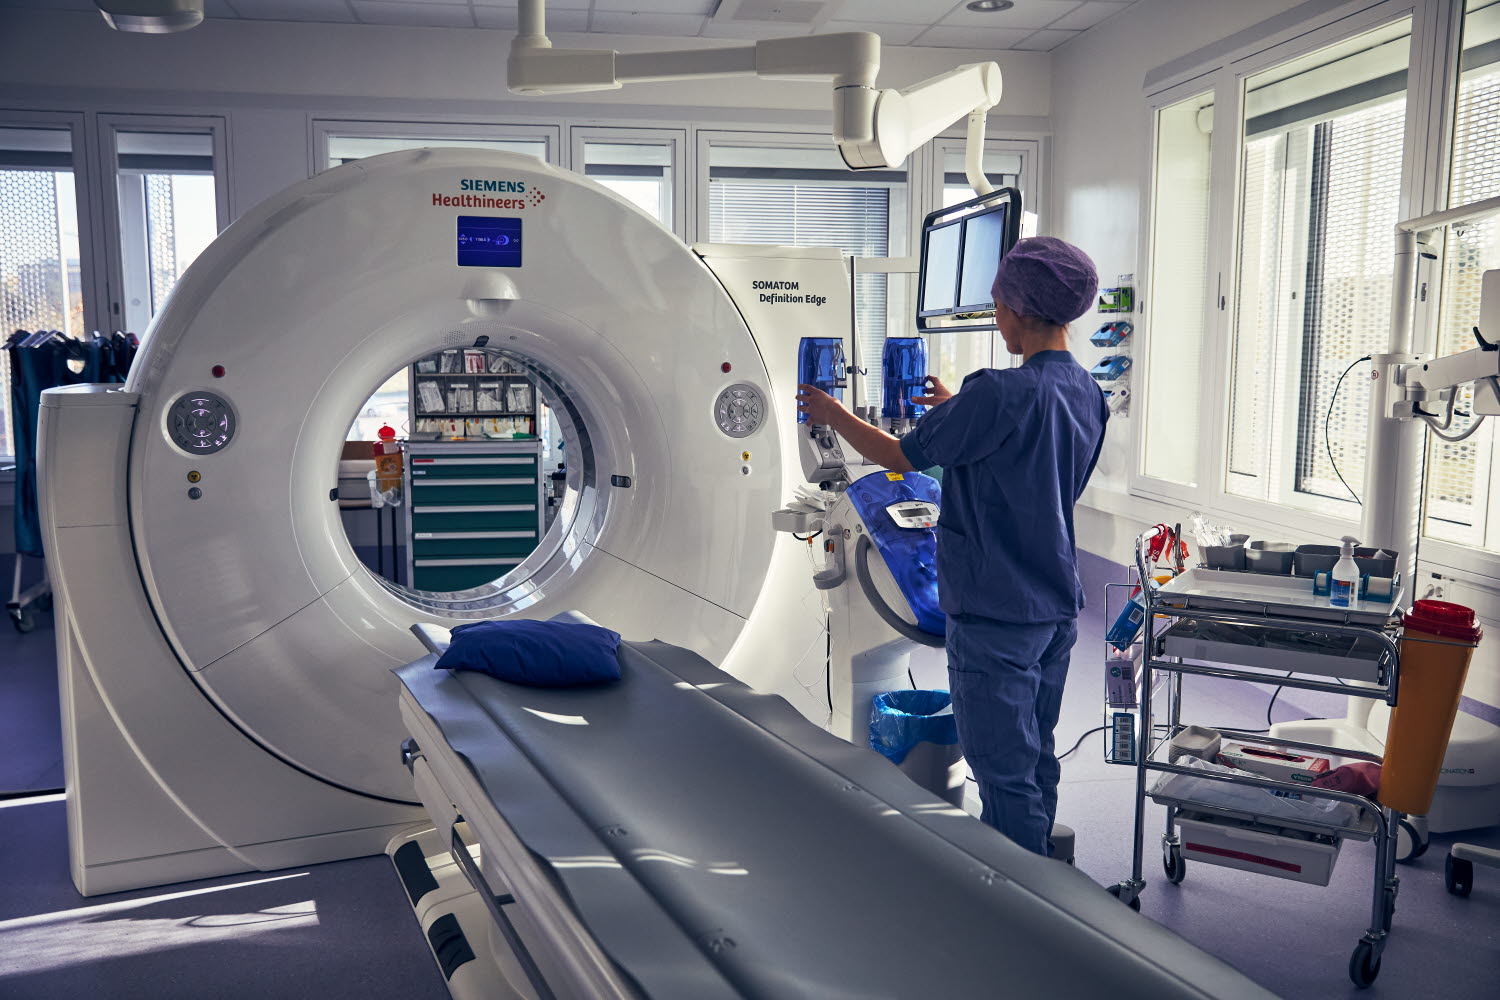 Röntgensjuksköterska förbereder röntgenapparat. Danderyds sjukhus, röntgen. Oktober 2021.